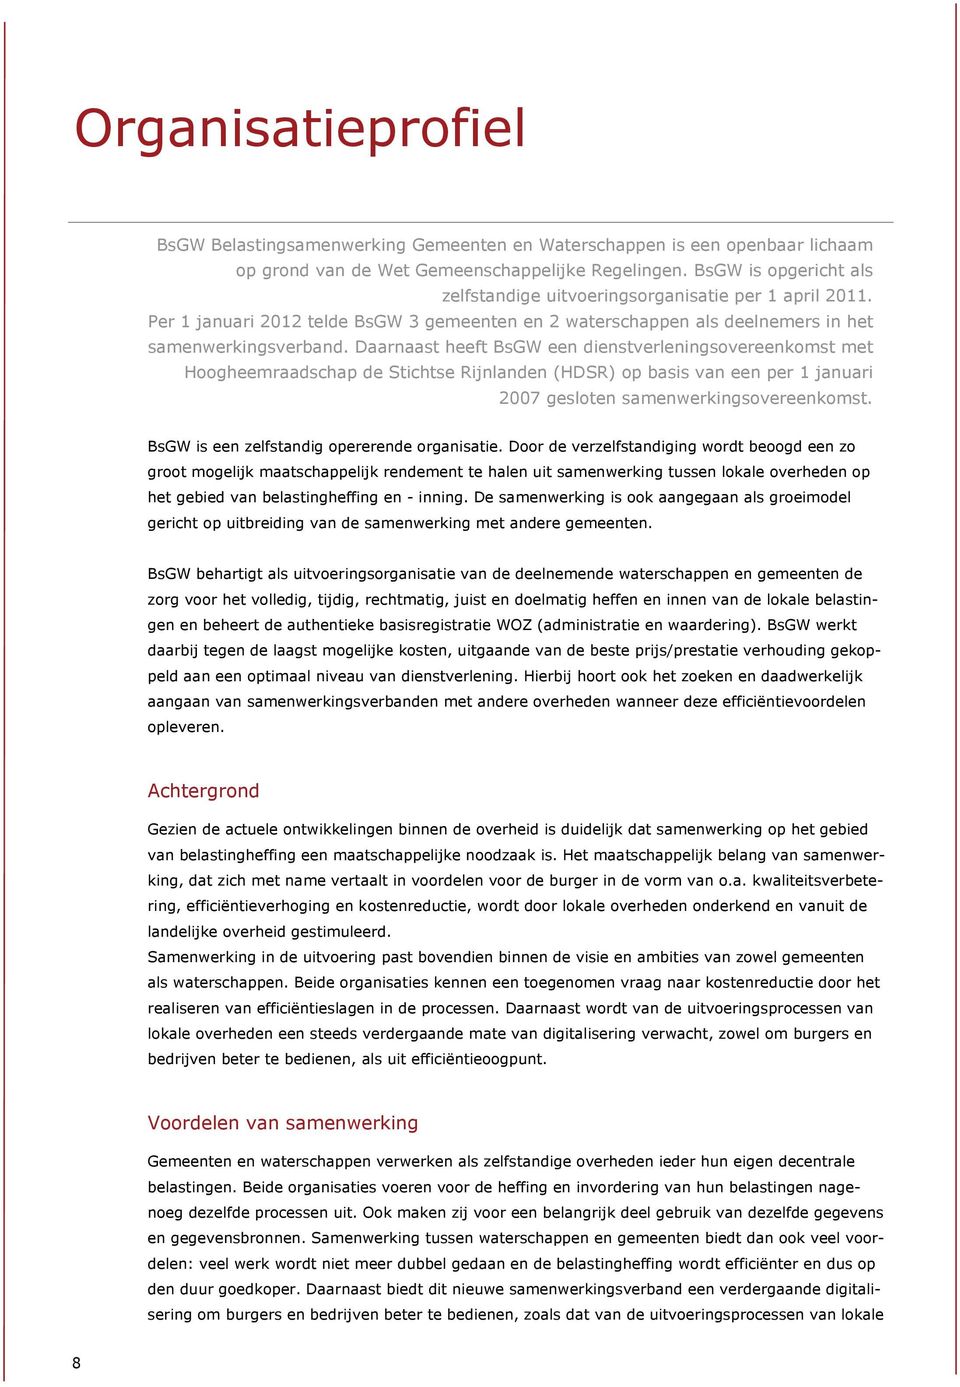 Daarnaast heeft BsGW een dienstverleningsovereenkomst met Hoogheemraadschap de Stichtse Rijnlanden (HDSR) op basis van een per 1 januari 2007 gesloten samenwerkingsovereenkomst.